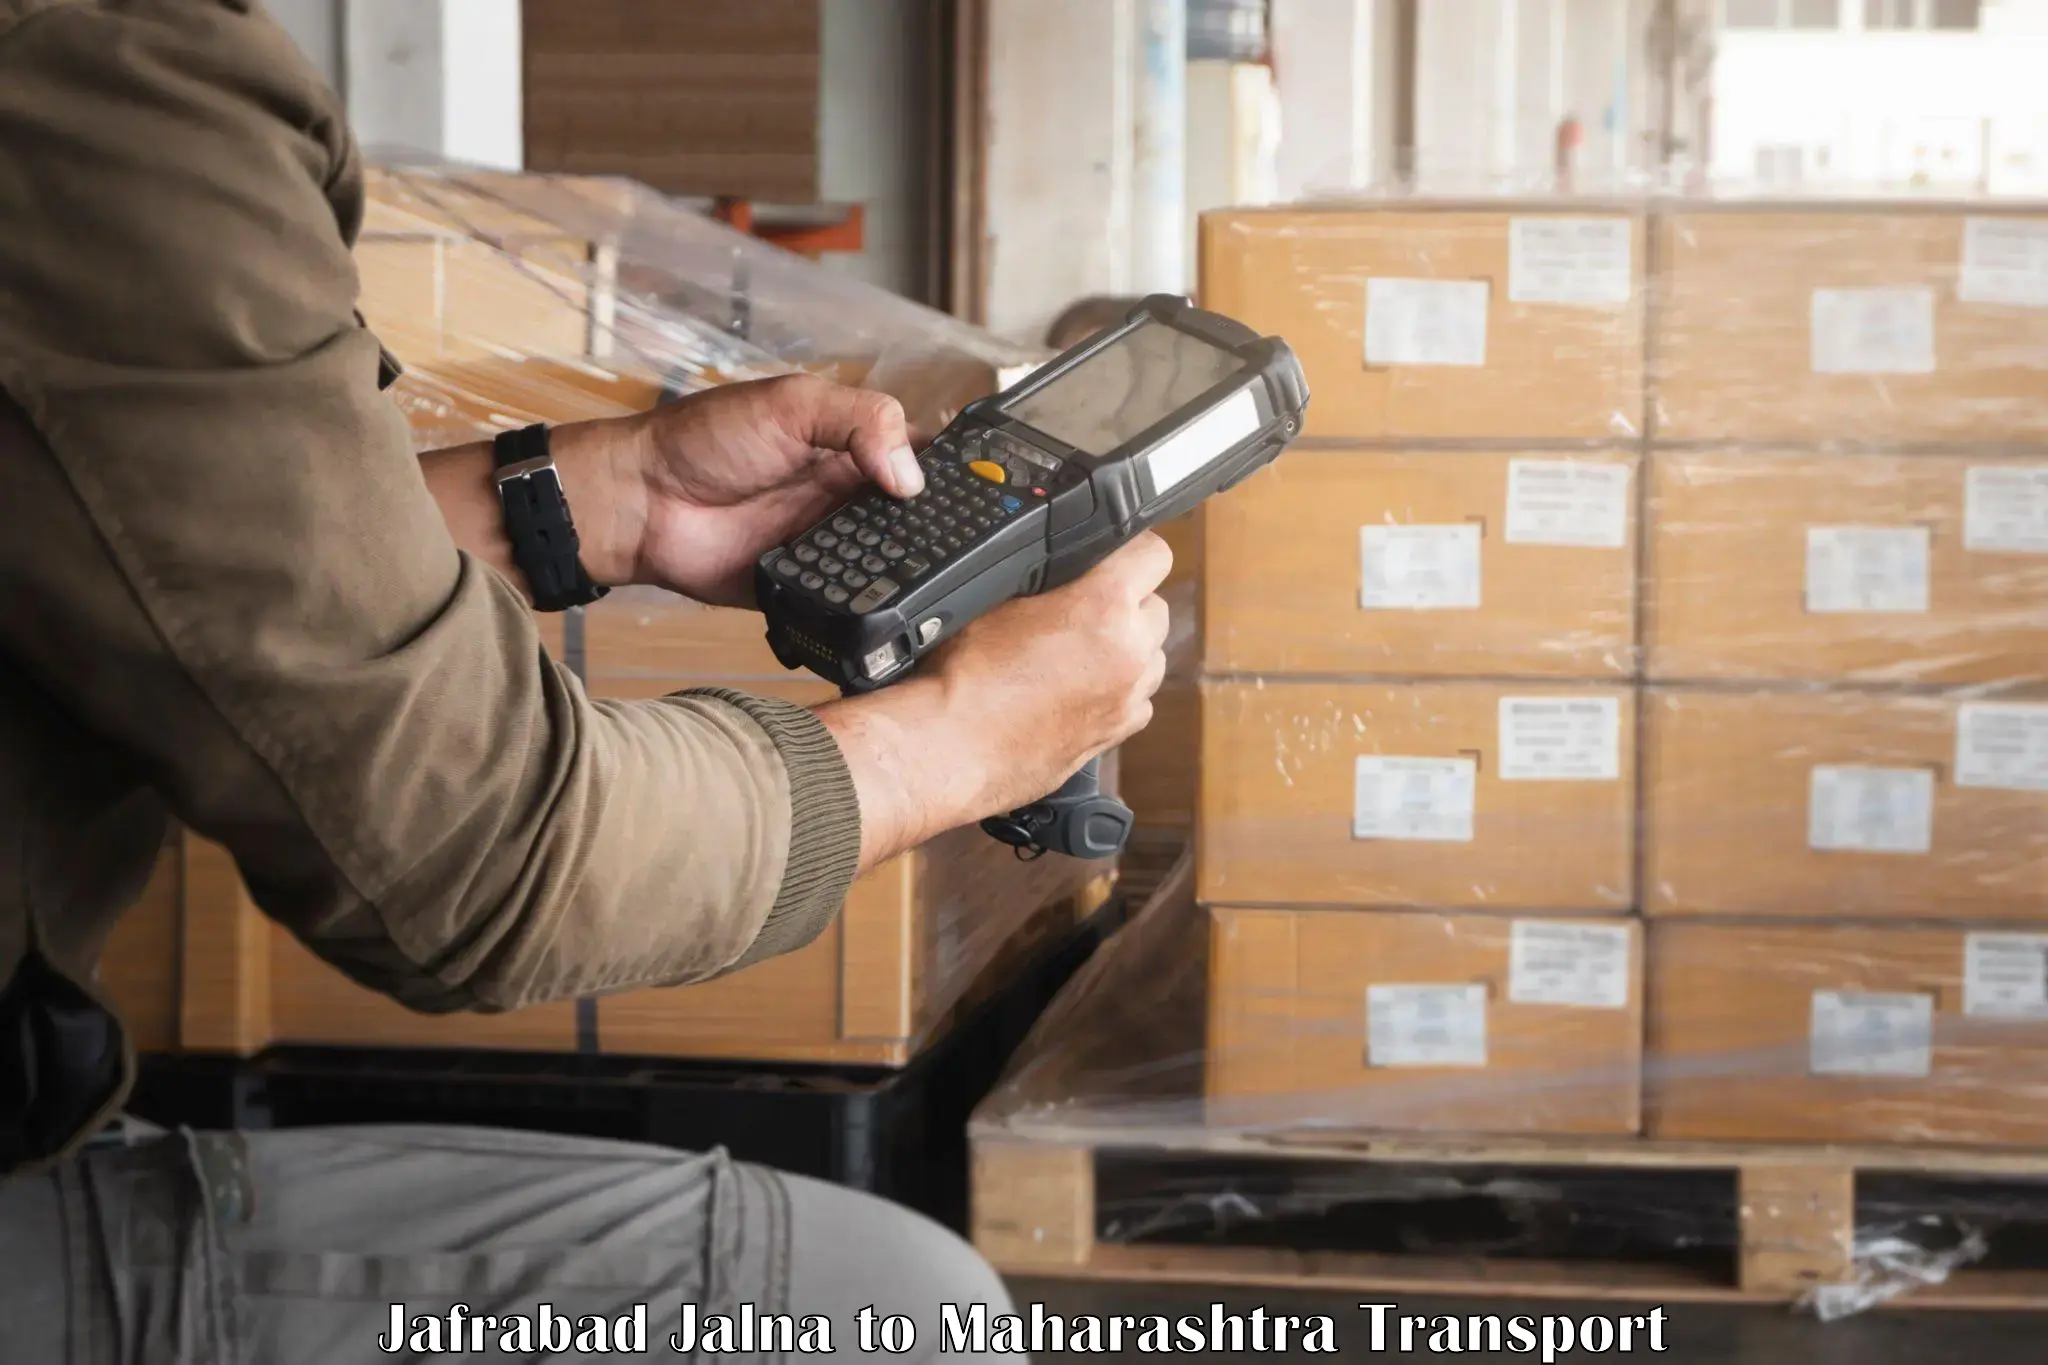 Shipping services Jafrabad Jalna to Nashik